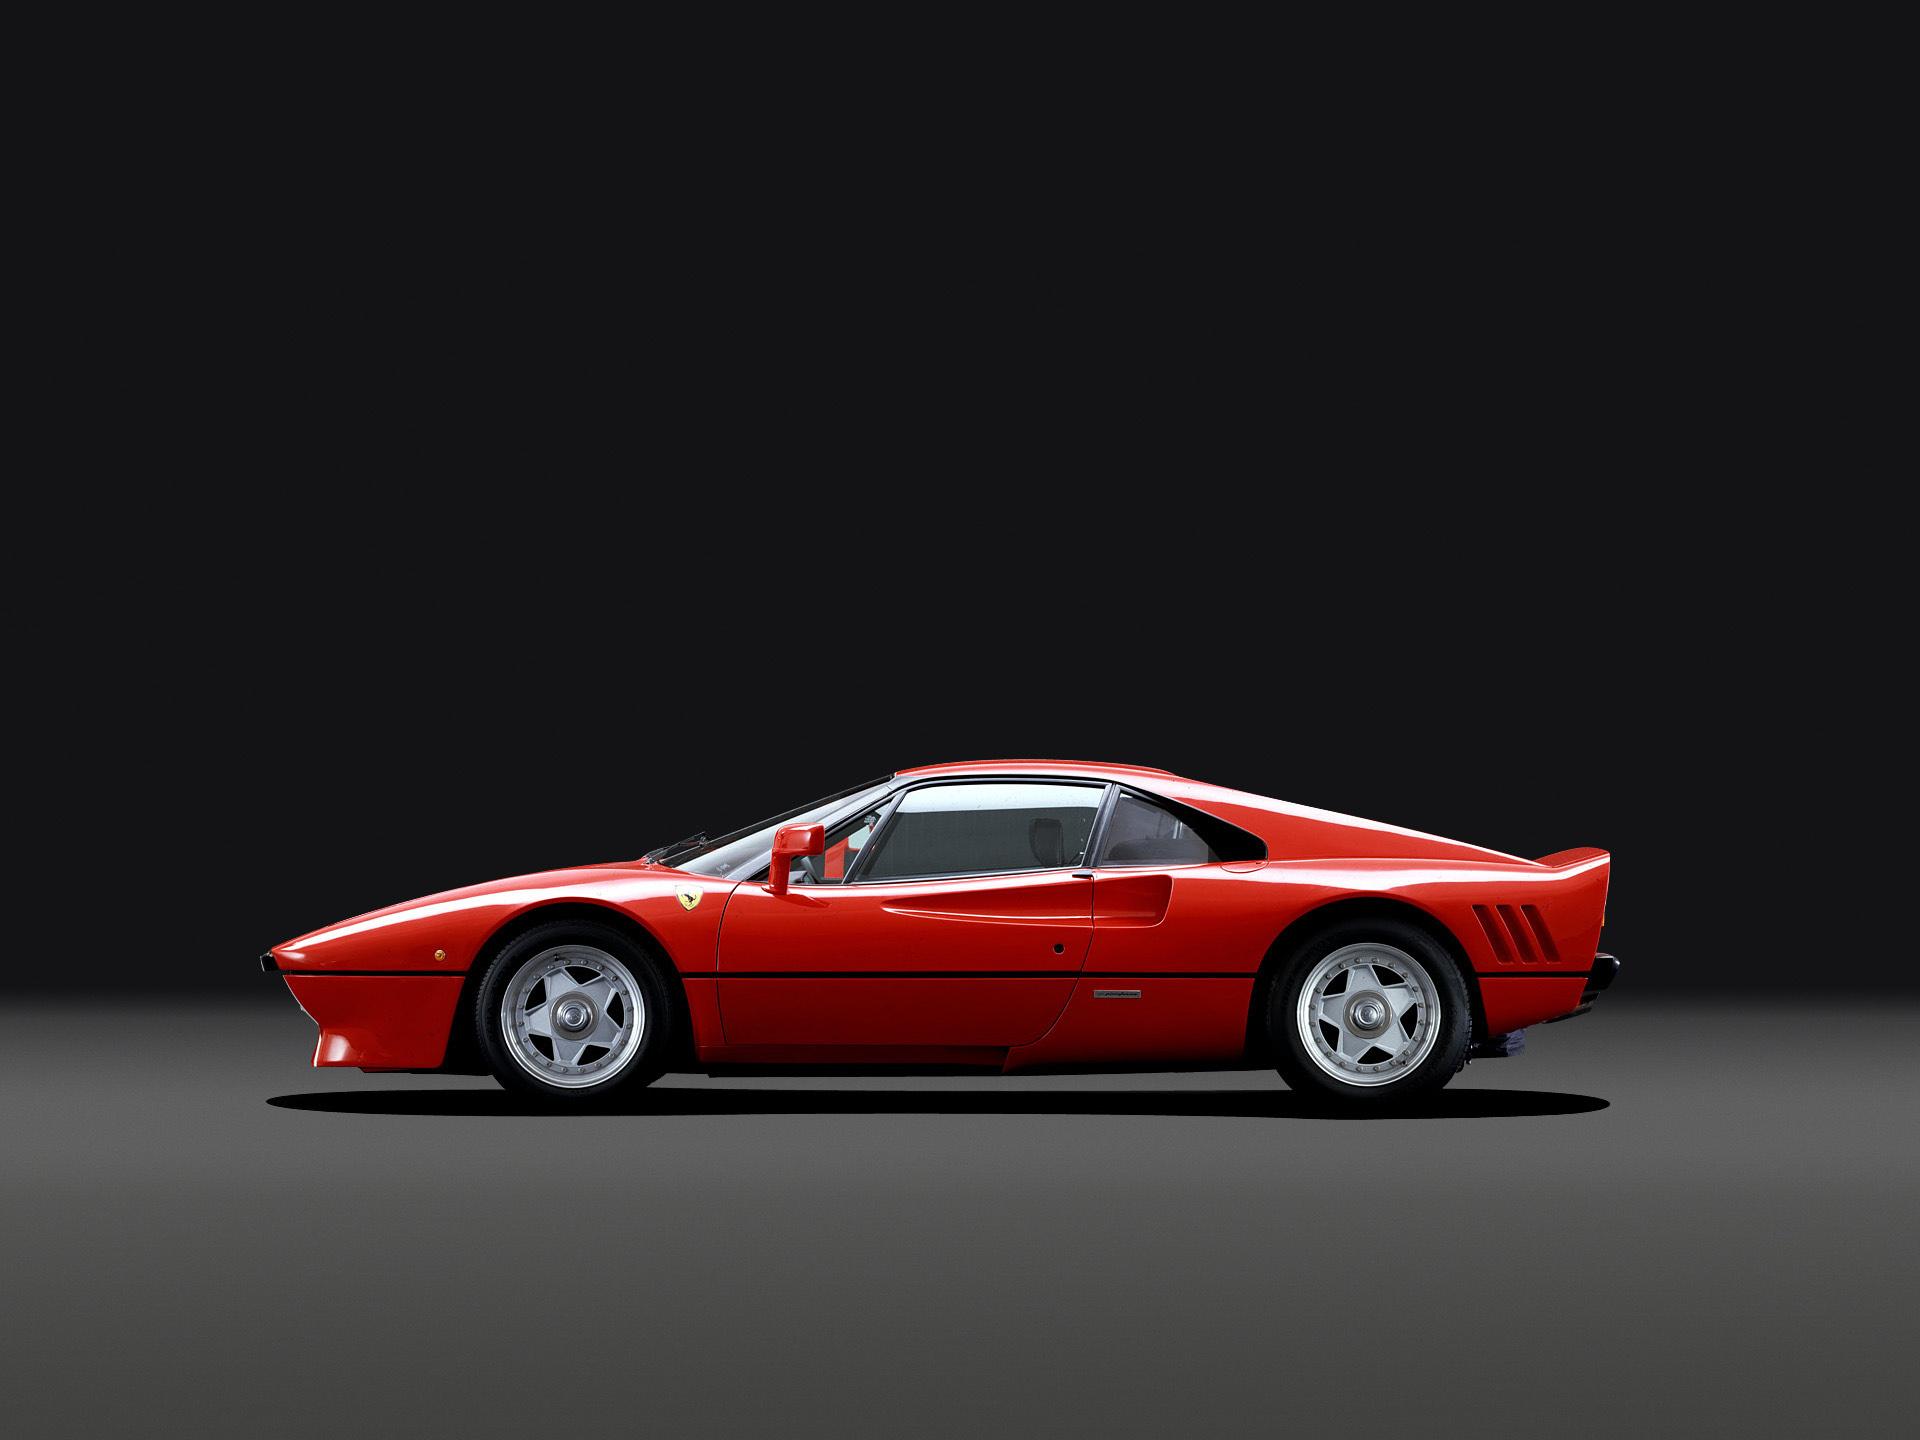 1920 x 1440 · jpeg - Ferrari 288 GTO HD Wallpaper | Background Image | 1920x1440 | ID:525029 ...